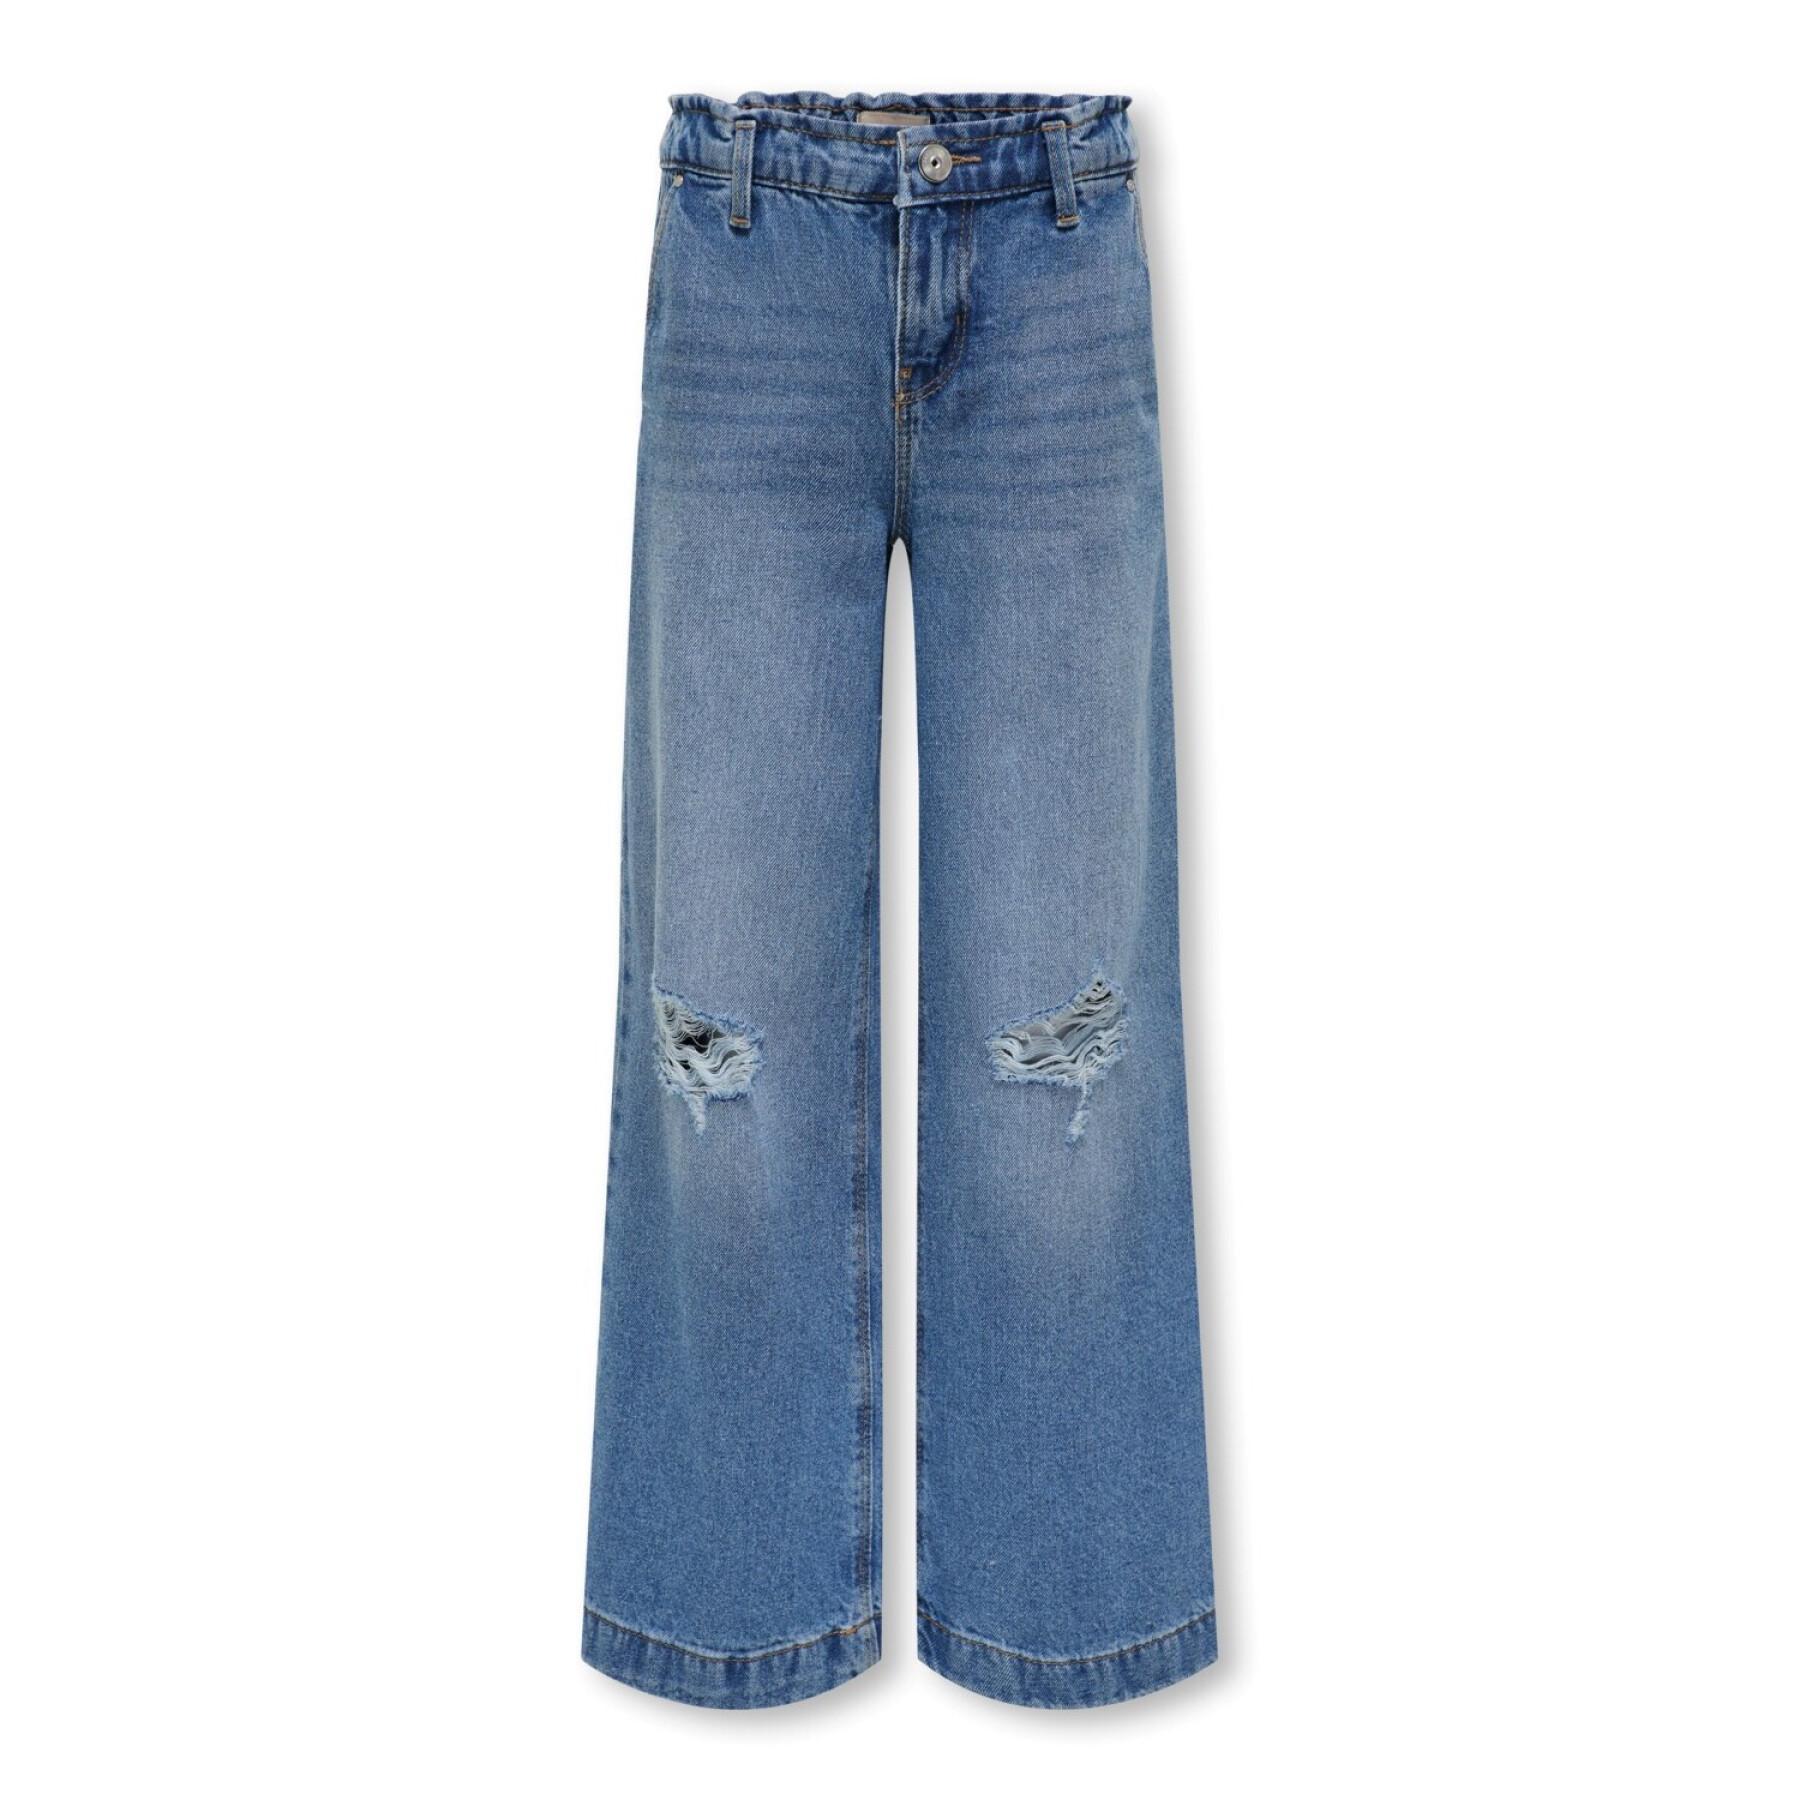 Jeans large girl Only kids Kogcomet Dest Pim006